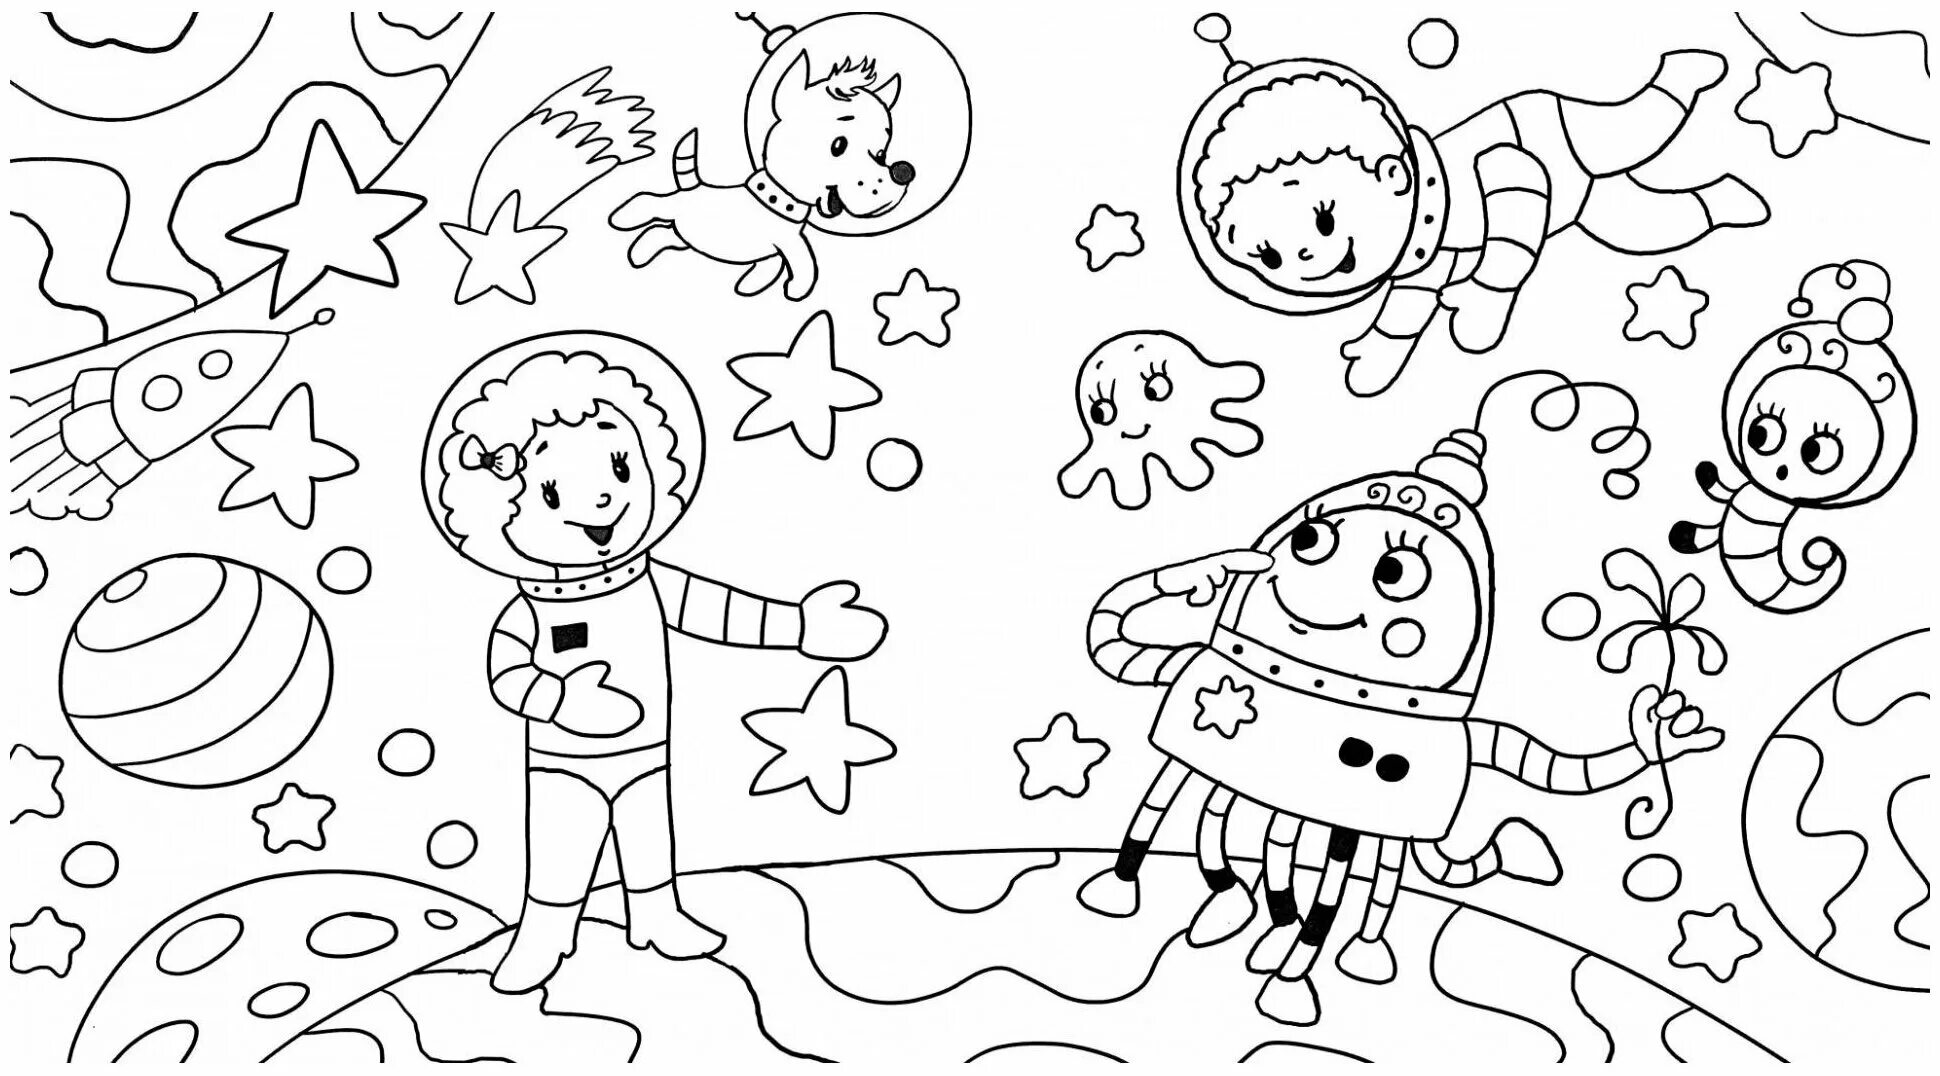 Раскраска космос 3 4 года. Раскраска. В космосе. Космос раскраска для детей. Космические раскраски для детей. Раскраски для детей космас.